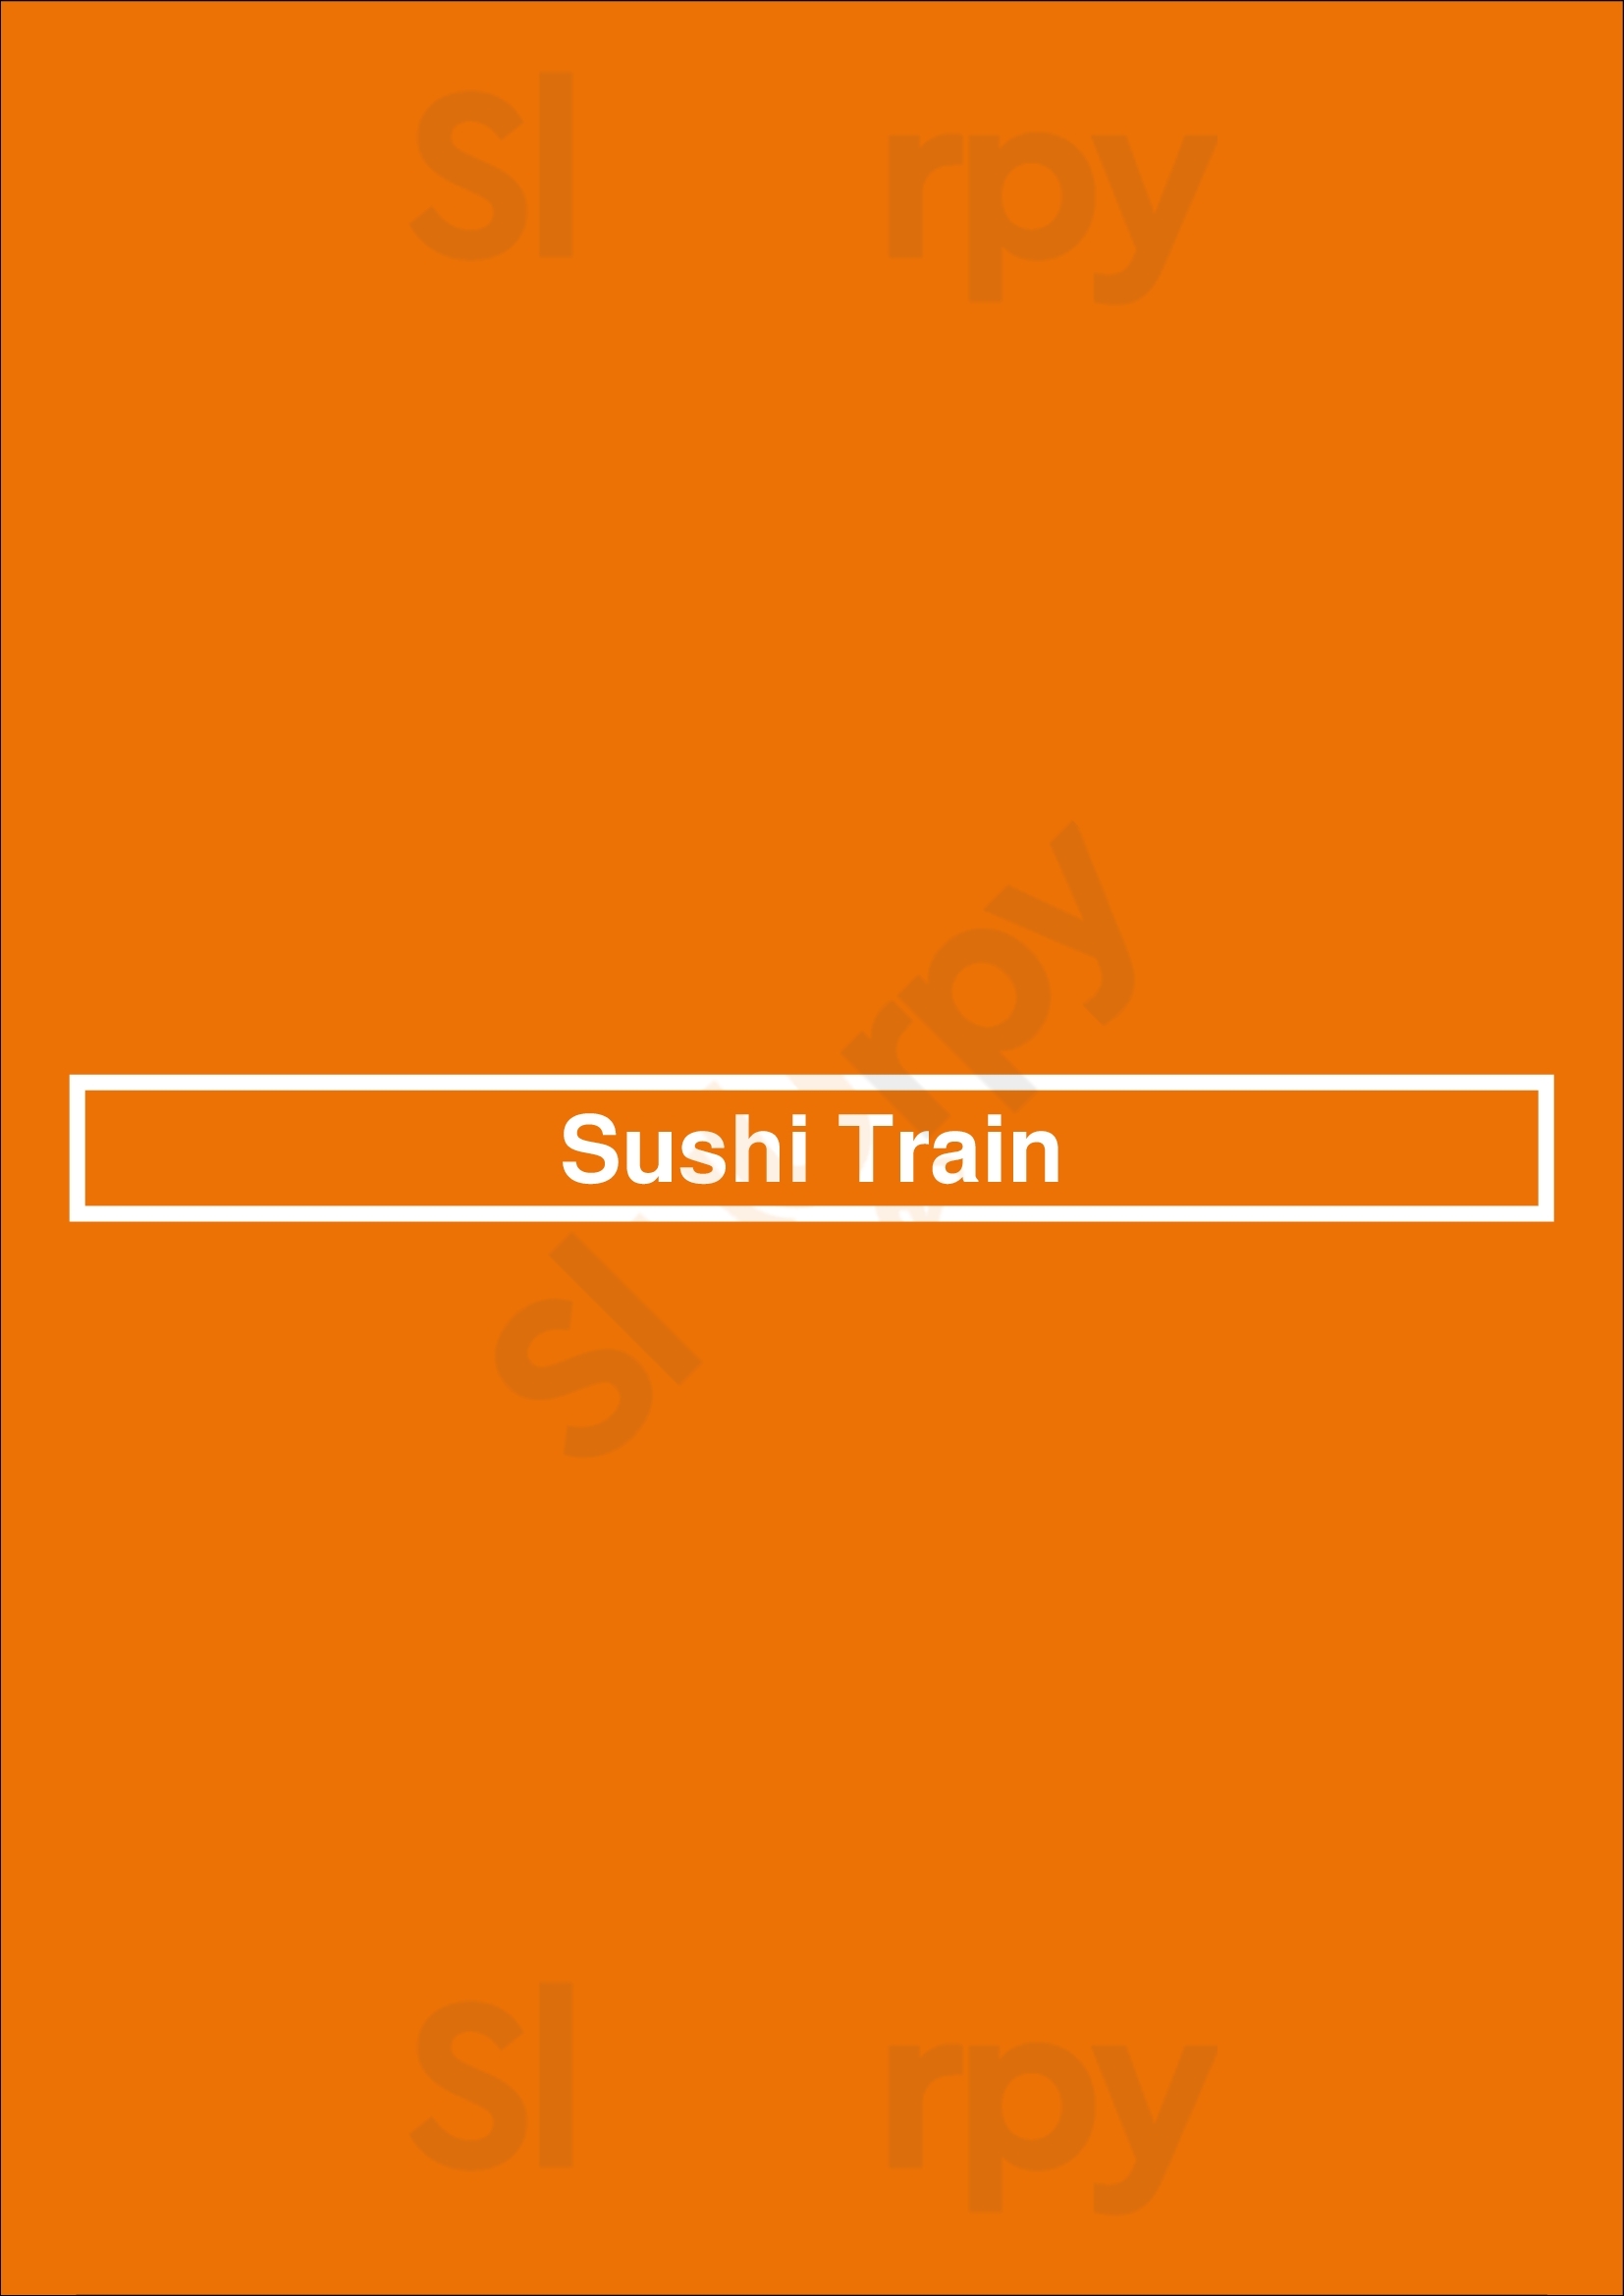 Sushi Train Tulsa Menu - 1